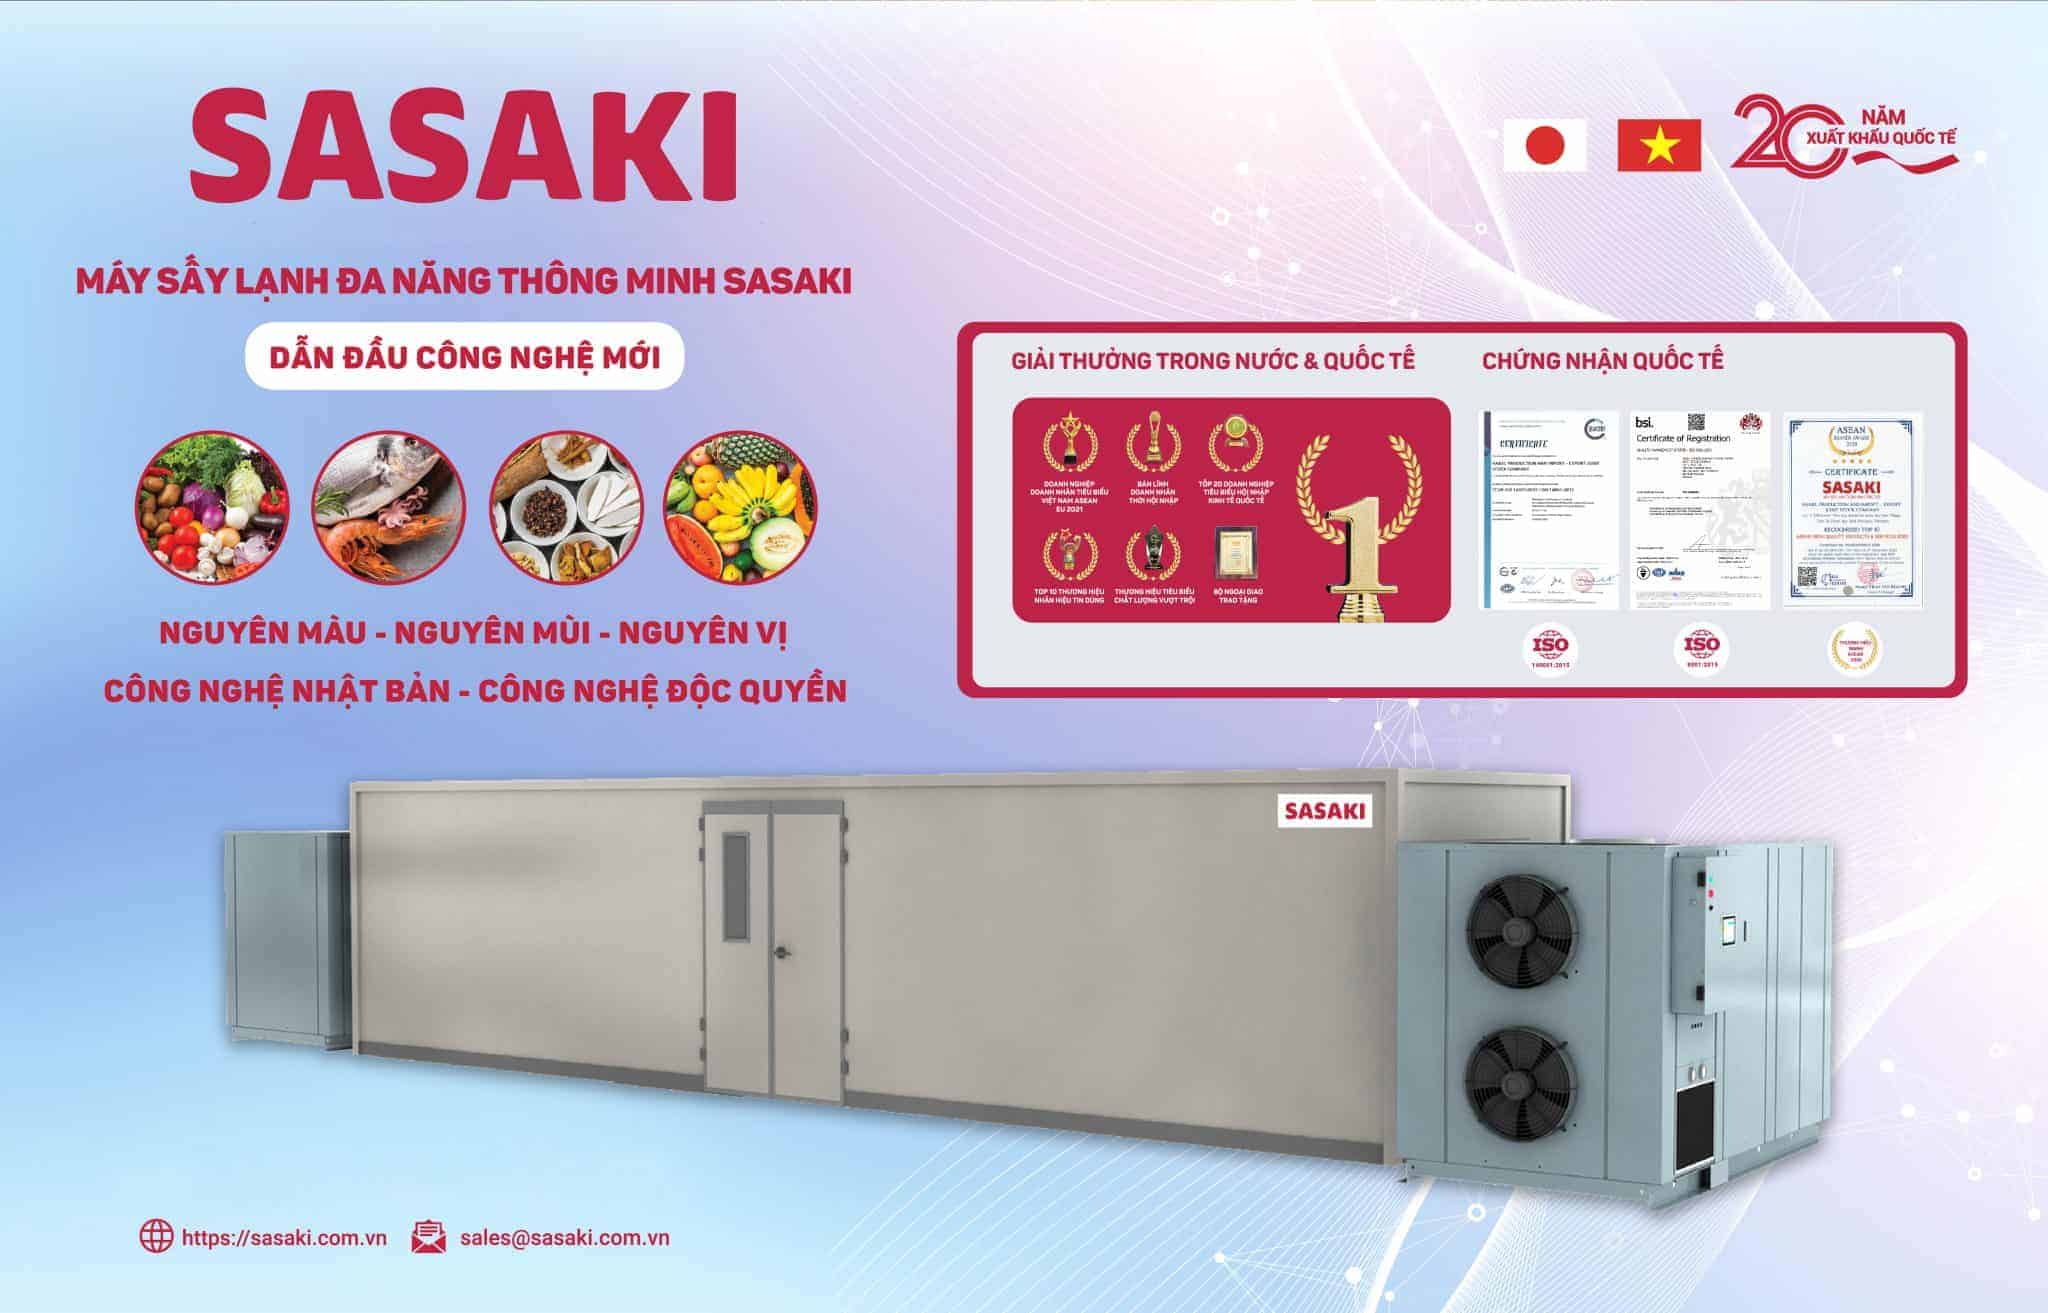 SASAKI là một trong những đơn vị đã có kinh nghiệm hơn 22 năm trong việc cung cấp giải pháp chế biến các loại nông - lâm - thủy sản